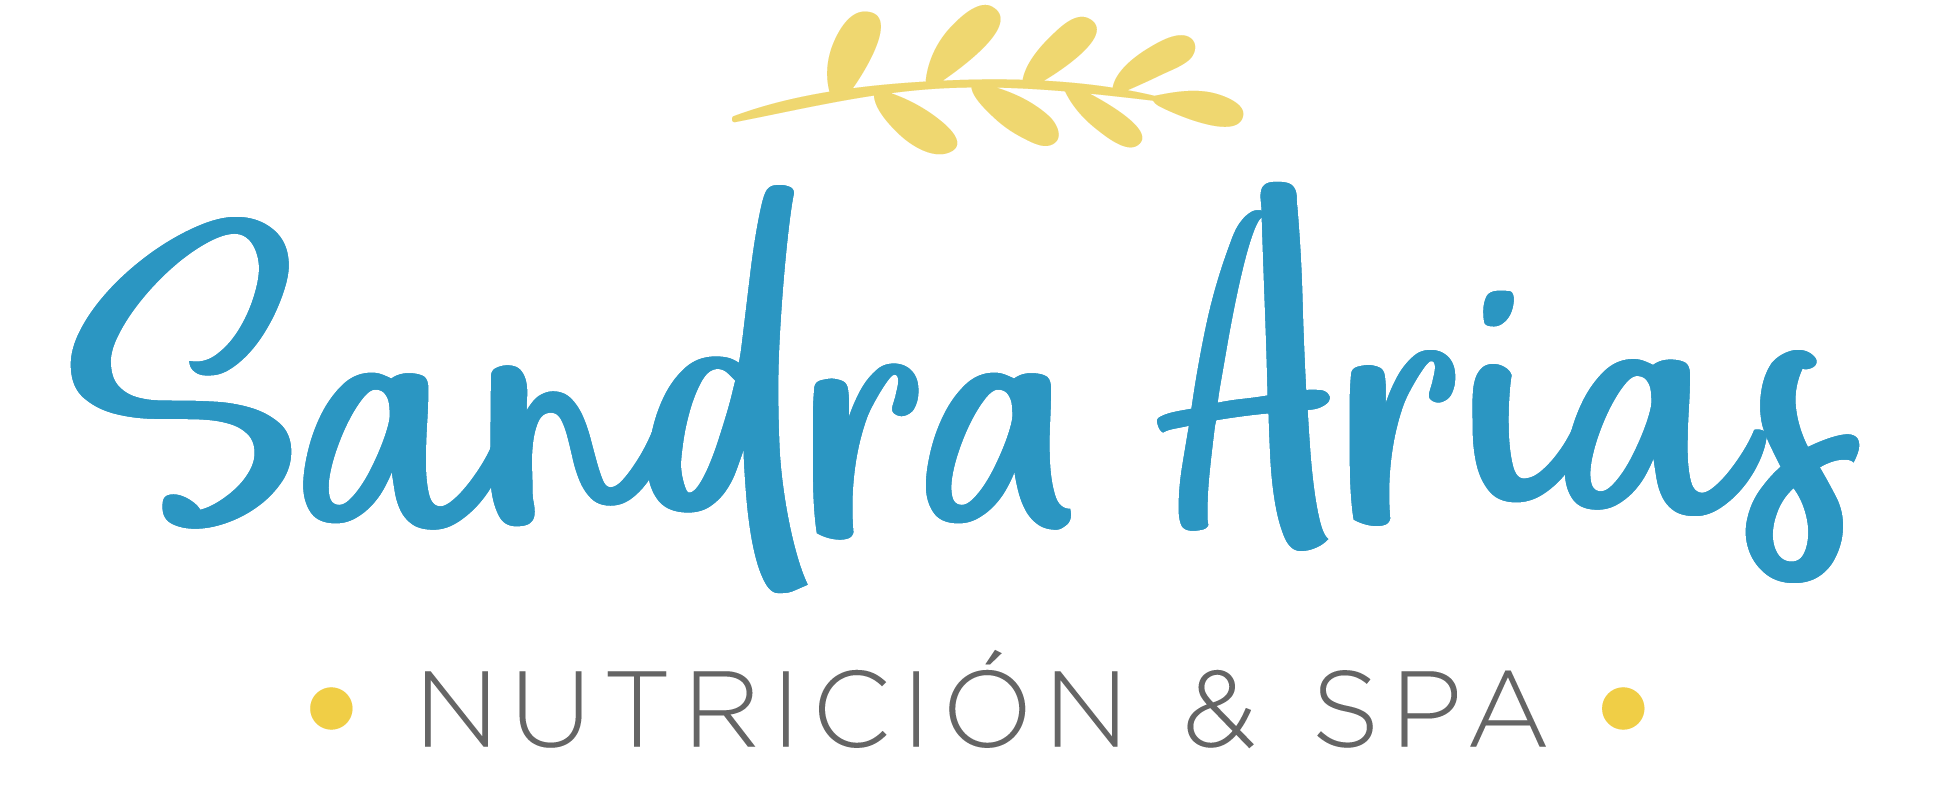 Sandra Arias Clínica | Nutrición y Spa